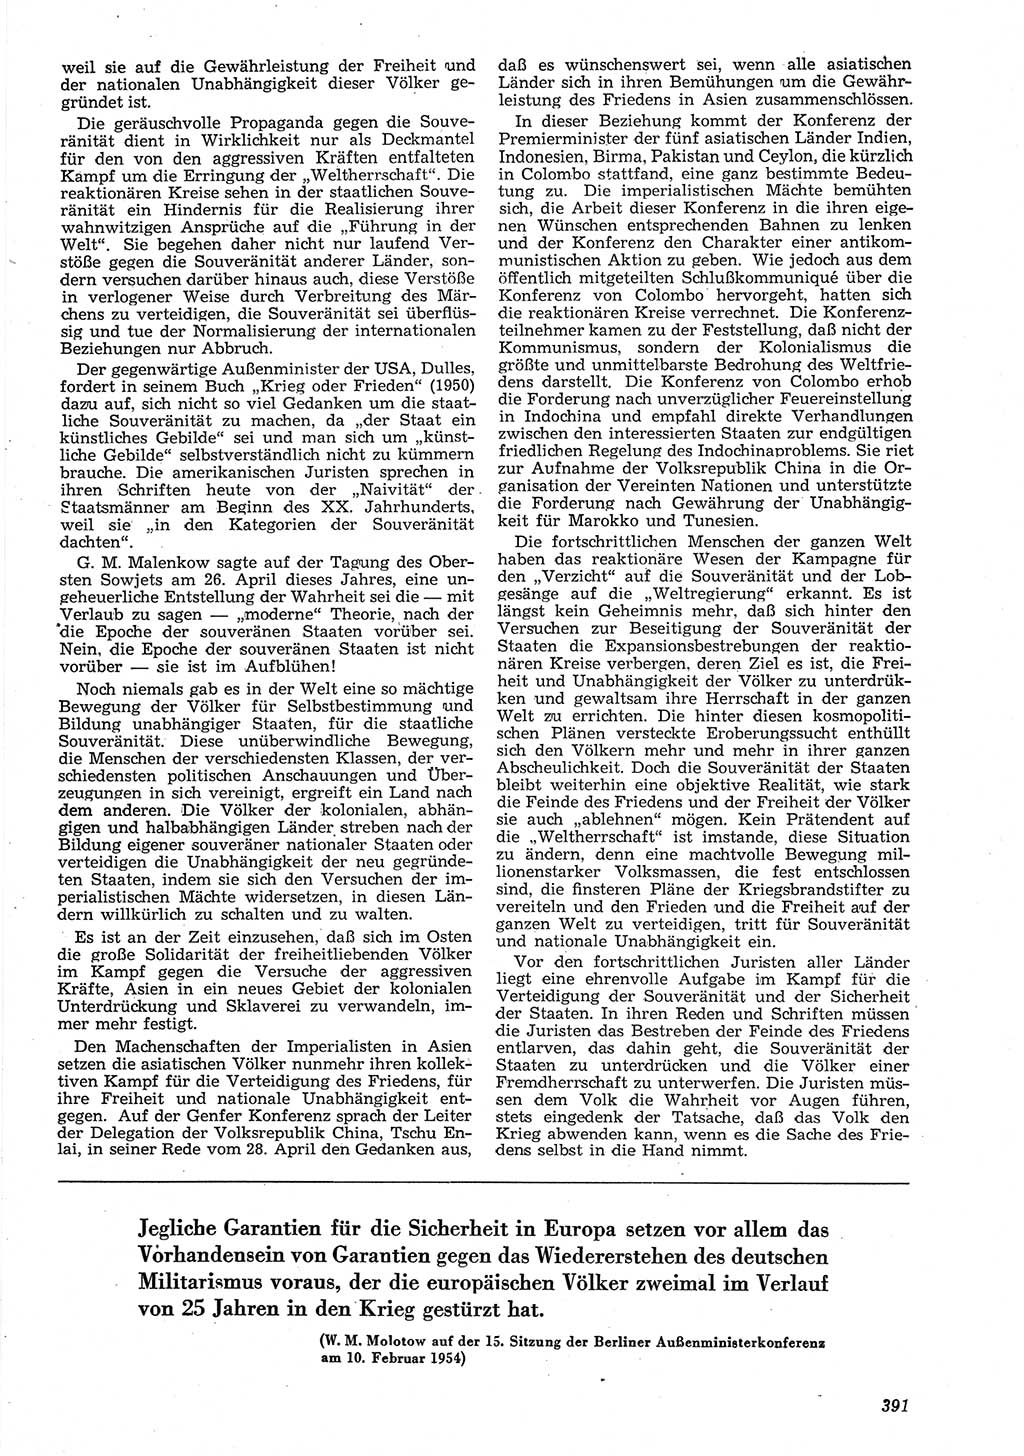 Neue Justiz (NJ), Zeitschrift für Recht und Rechtswissenschaft [Deutsche Demokratische Republik (DDR)], 8. Jahrgang 1954, Seite 391 (NJ DDR 1954, S. 391)